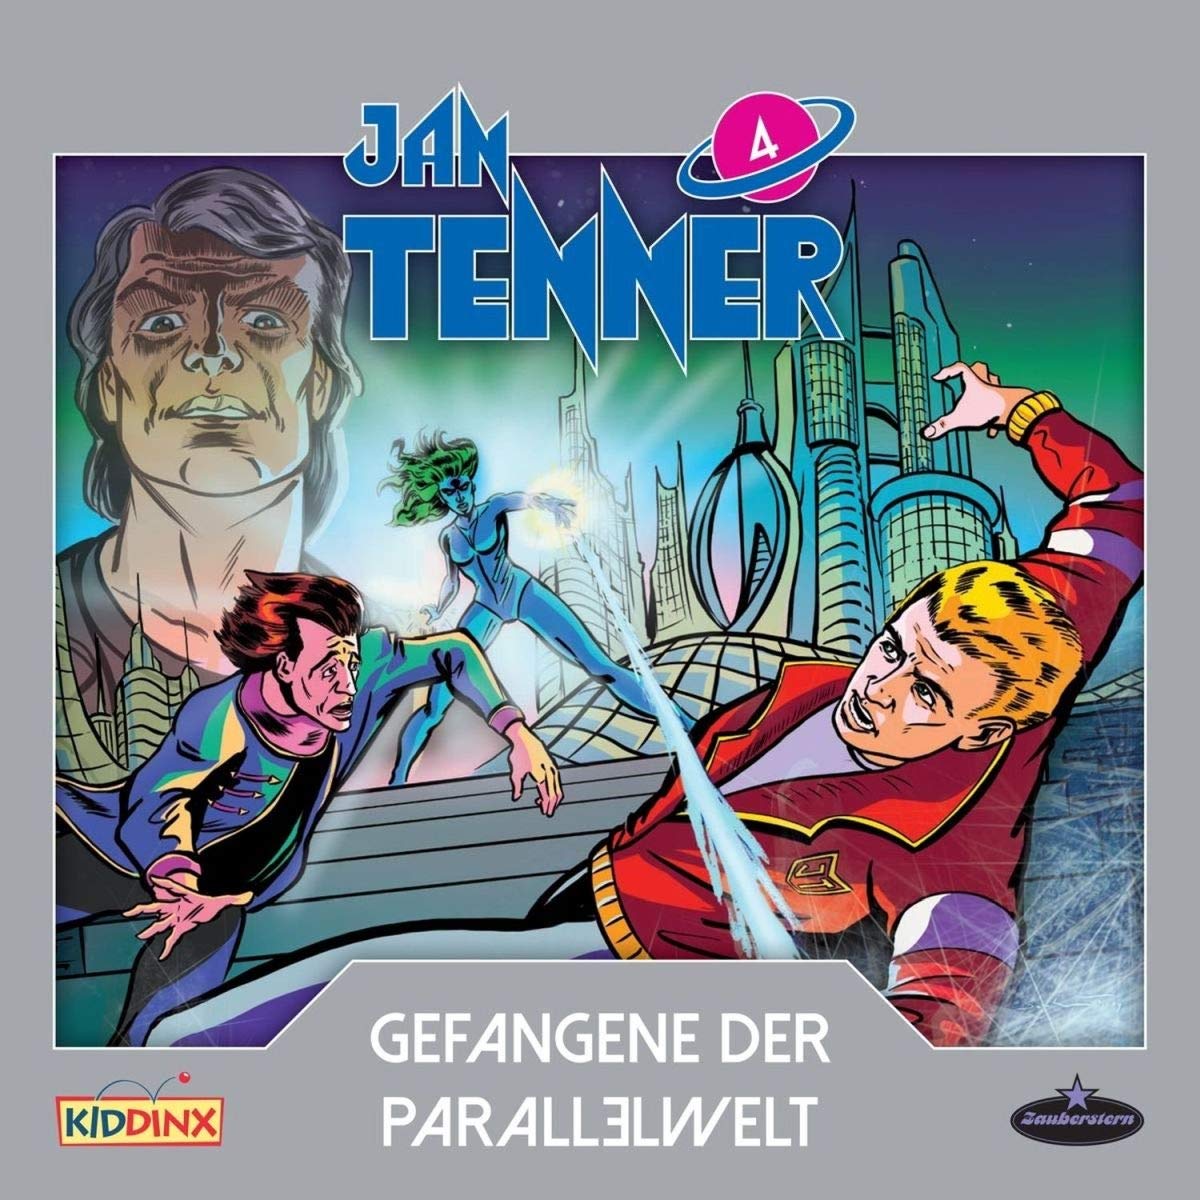 Hörspielrezension: "Jan Tenner 4 - Gefangene der Parallelwelt" 1